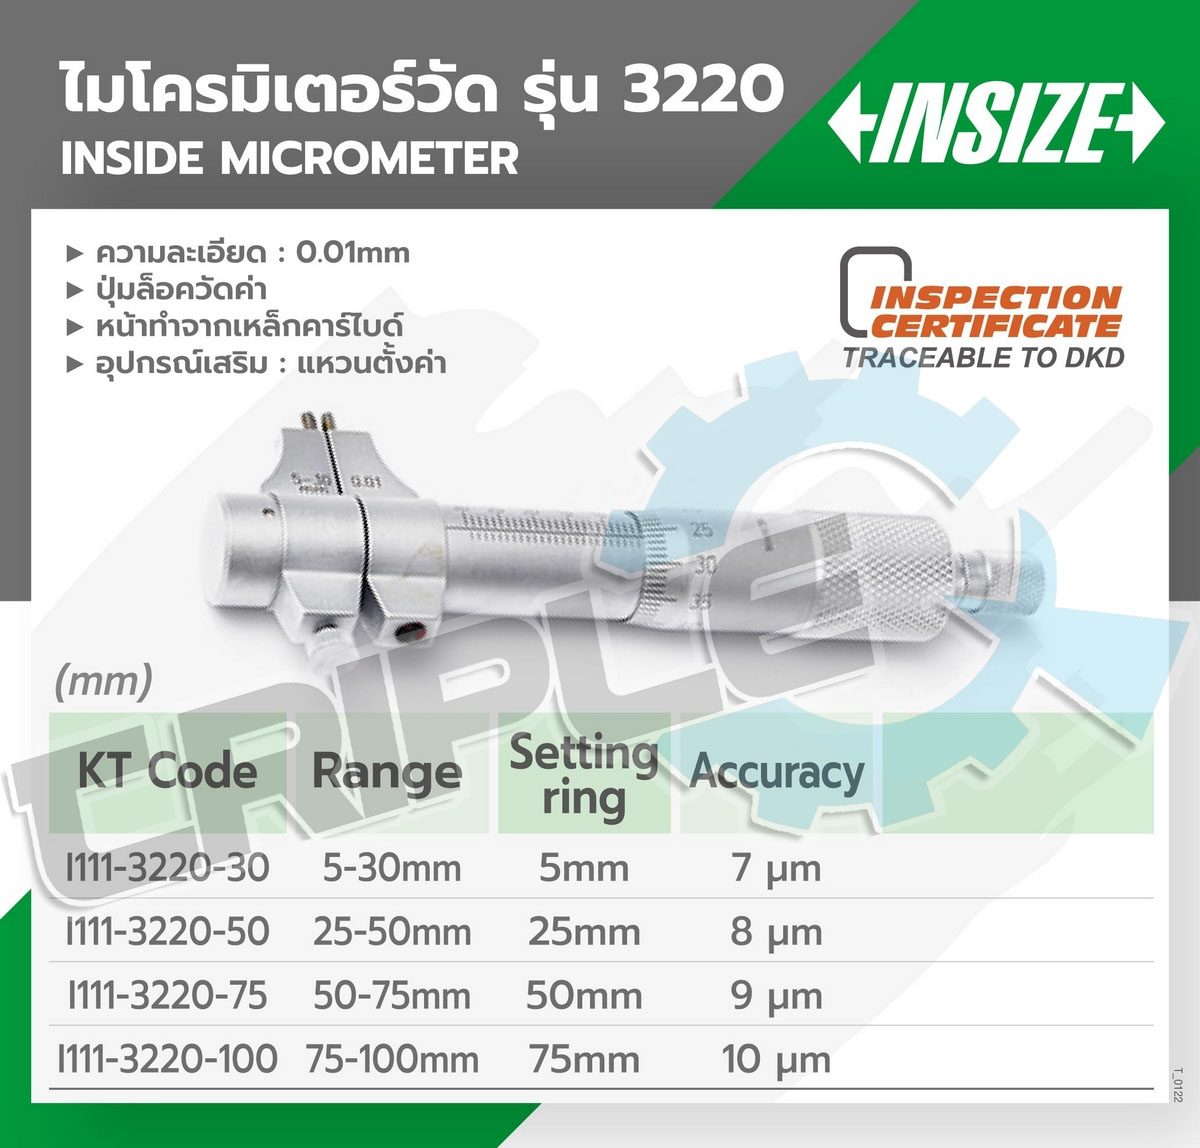 INSIZE - ไมโครมิเตอร์วัดรูใน รุ่น 3220-100 ขนาด 75-100 มม. ความละเอียดในการอ่าน 0.01 มม. ปากวัดงานเป็นคาร์ไบด์ ขนาดกะทัดรัด ใช้วัสดุด้วยเหล็กกล้า ไม่เป็นสนิม